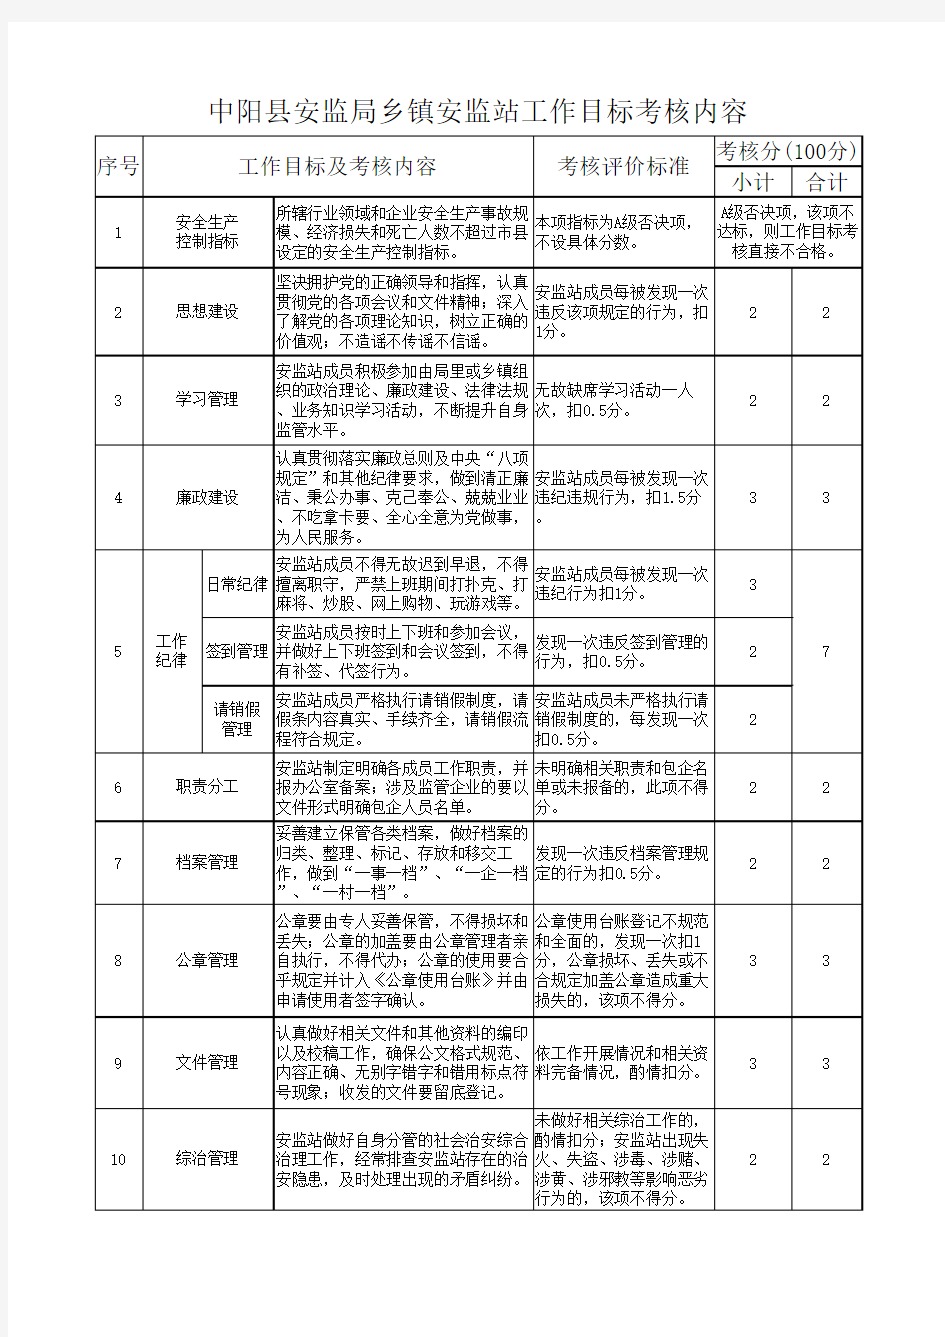 中阳县安监局乡镇安监站2016年责任制考核评分标准